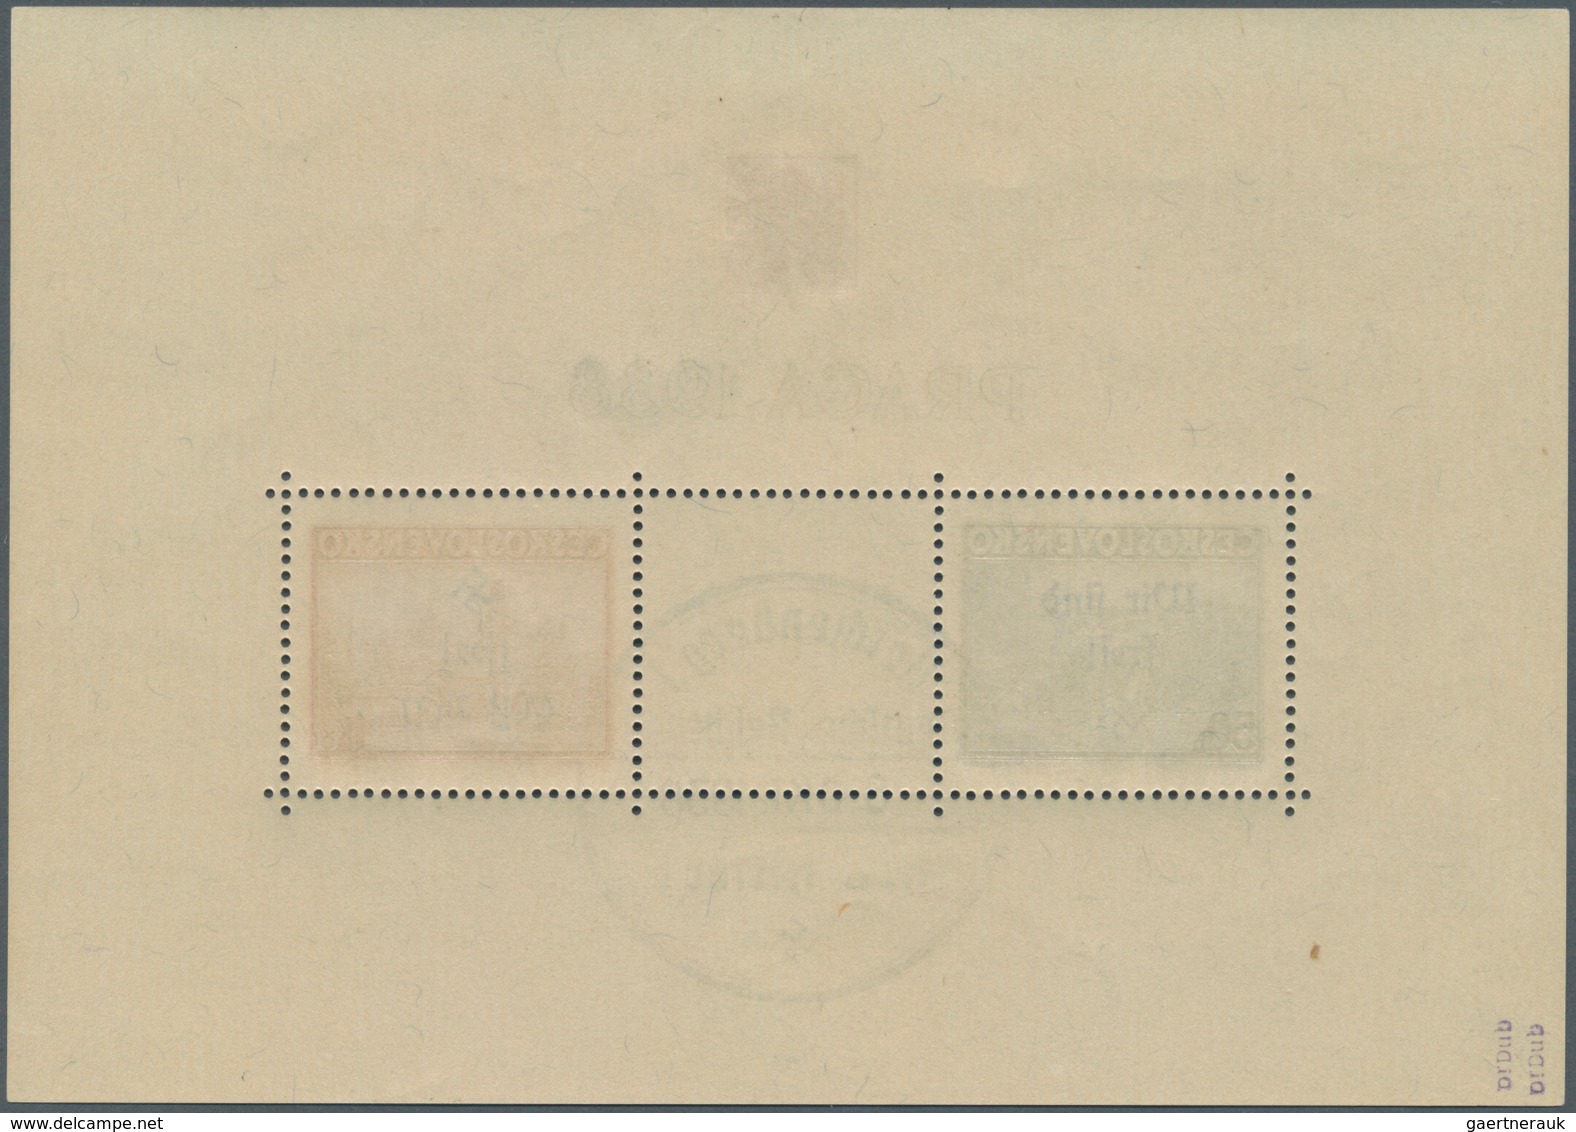 00170 Sudetenland - Reichenberg: Blockausgabe "Briefmarkenausstellung PRAGA 1938", Mit Handstempelaufdruck - Région Des Sudètes